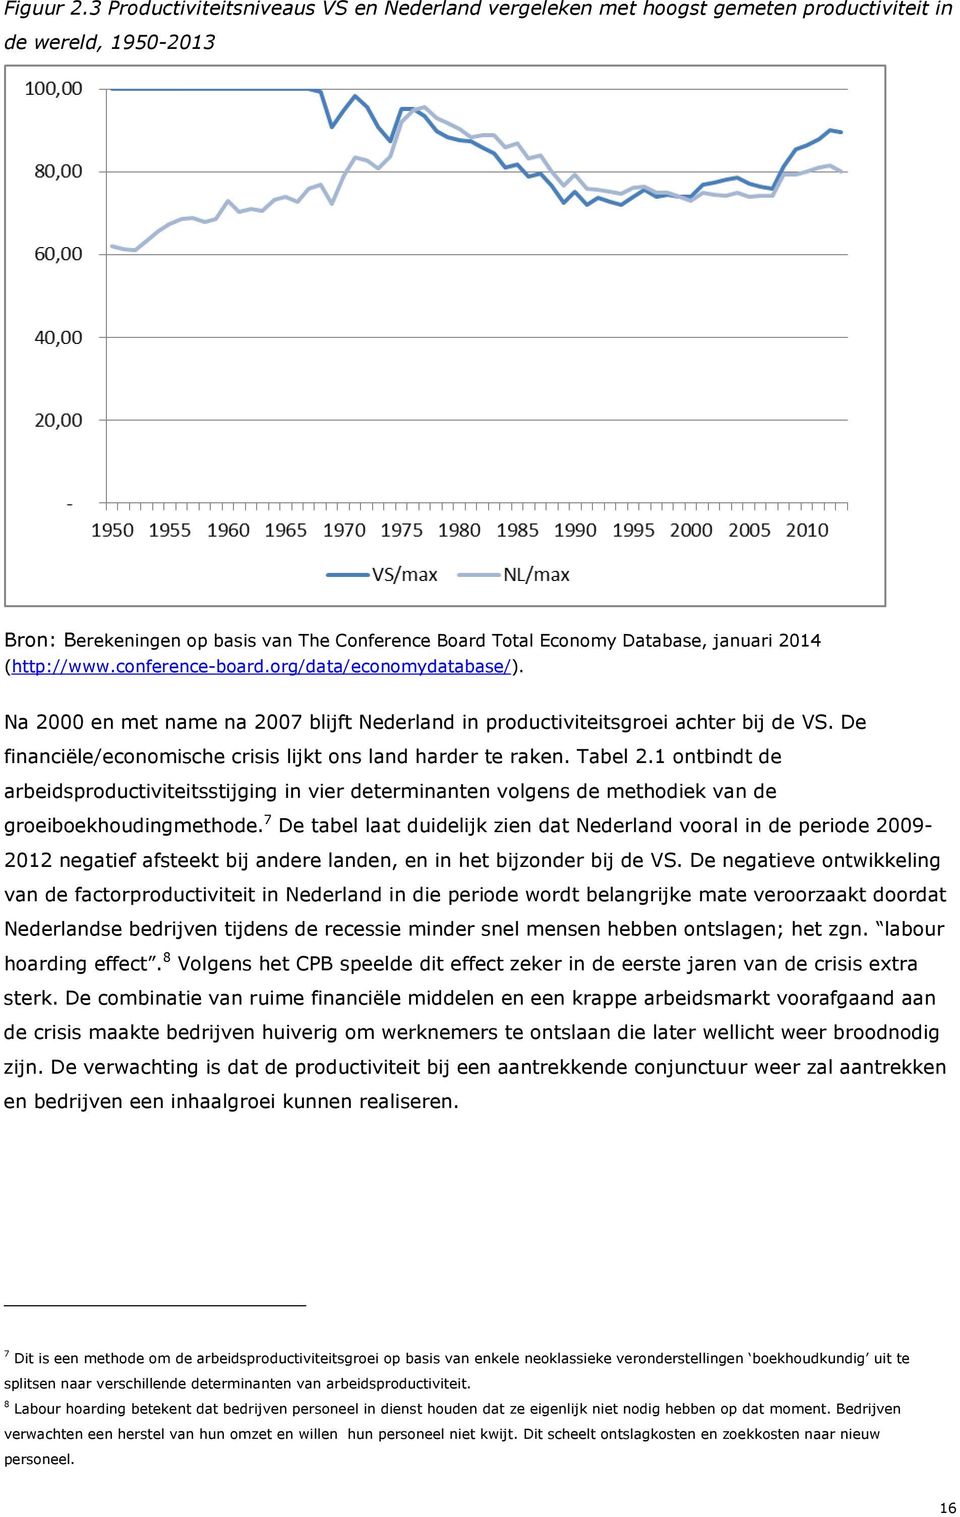 (http://www.conference-board.org/data/economydatabase/). Na 2000 en met name na 2007 blijft Nederland in productiviteitsgroei achter bij de VS.